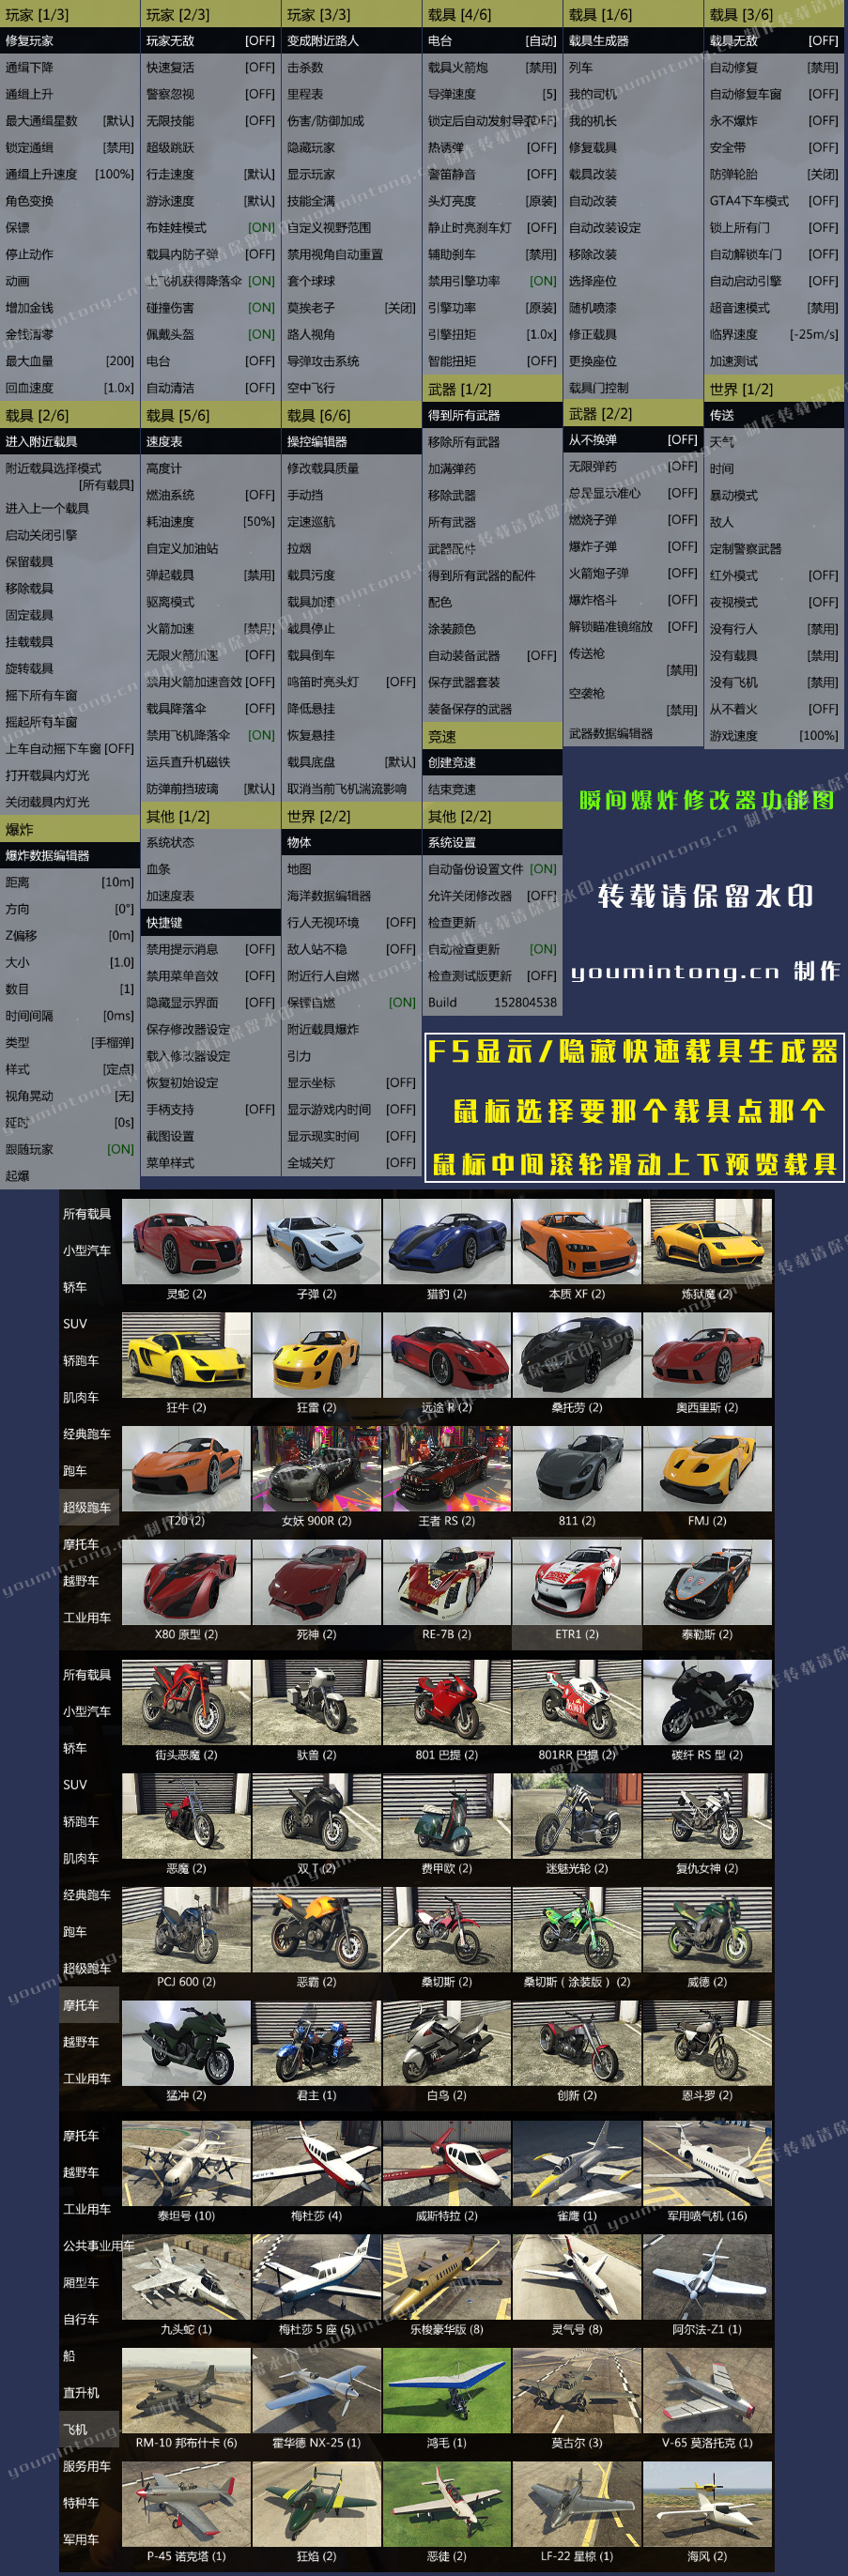 《侠盗猎车手5》GTA5瞬间爆炸修改器 v1.66 中文英文繁体三合一版本 小白一键启动版 下载